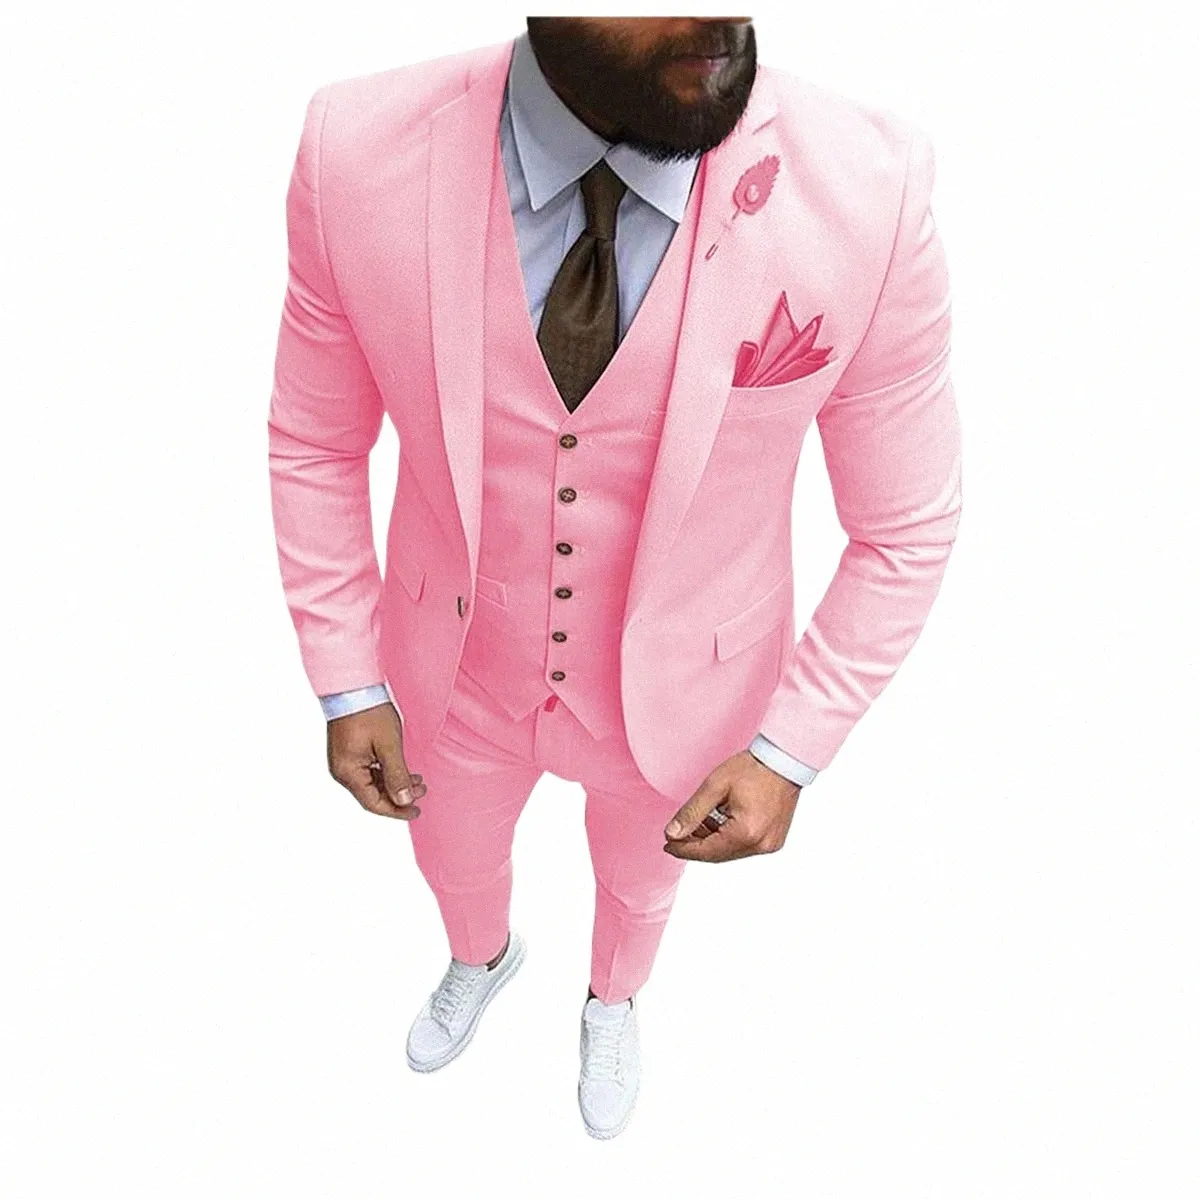 Nuovo vestito da uomo 3 pezzi rosa formale Busin Notch risvolto Slim Fit Tuxedo Best Man Blazer per matrimonio Giacca + gilet + pantaloni u2Dk #